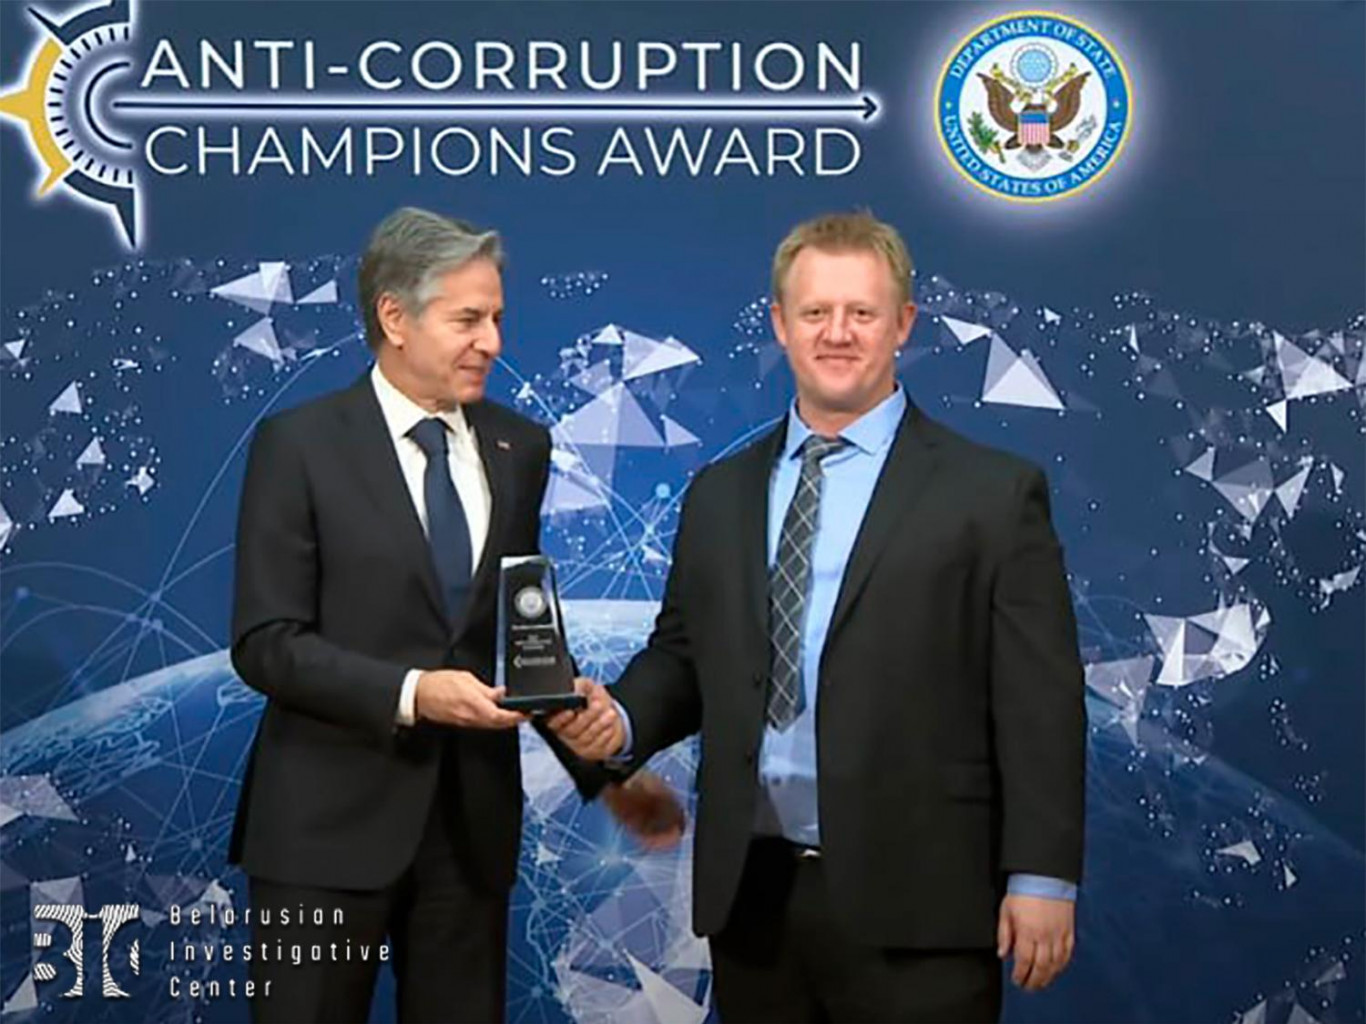 Руководитель БРЦ Станислав Ивашкевич получил награду «Чемпион по борьбе с коррупцией» от Госдепартамента США